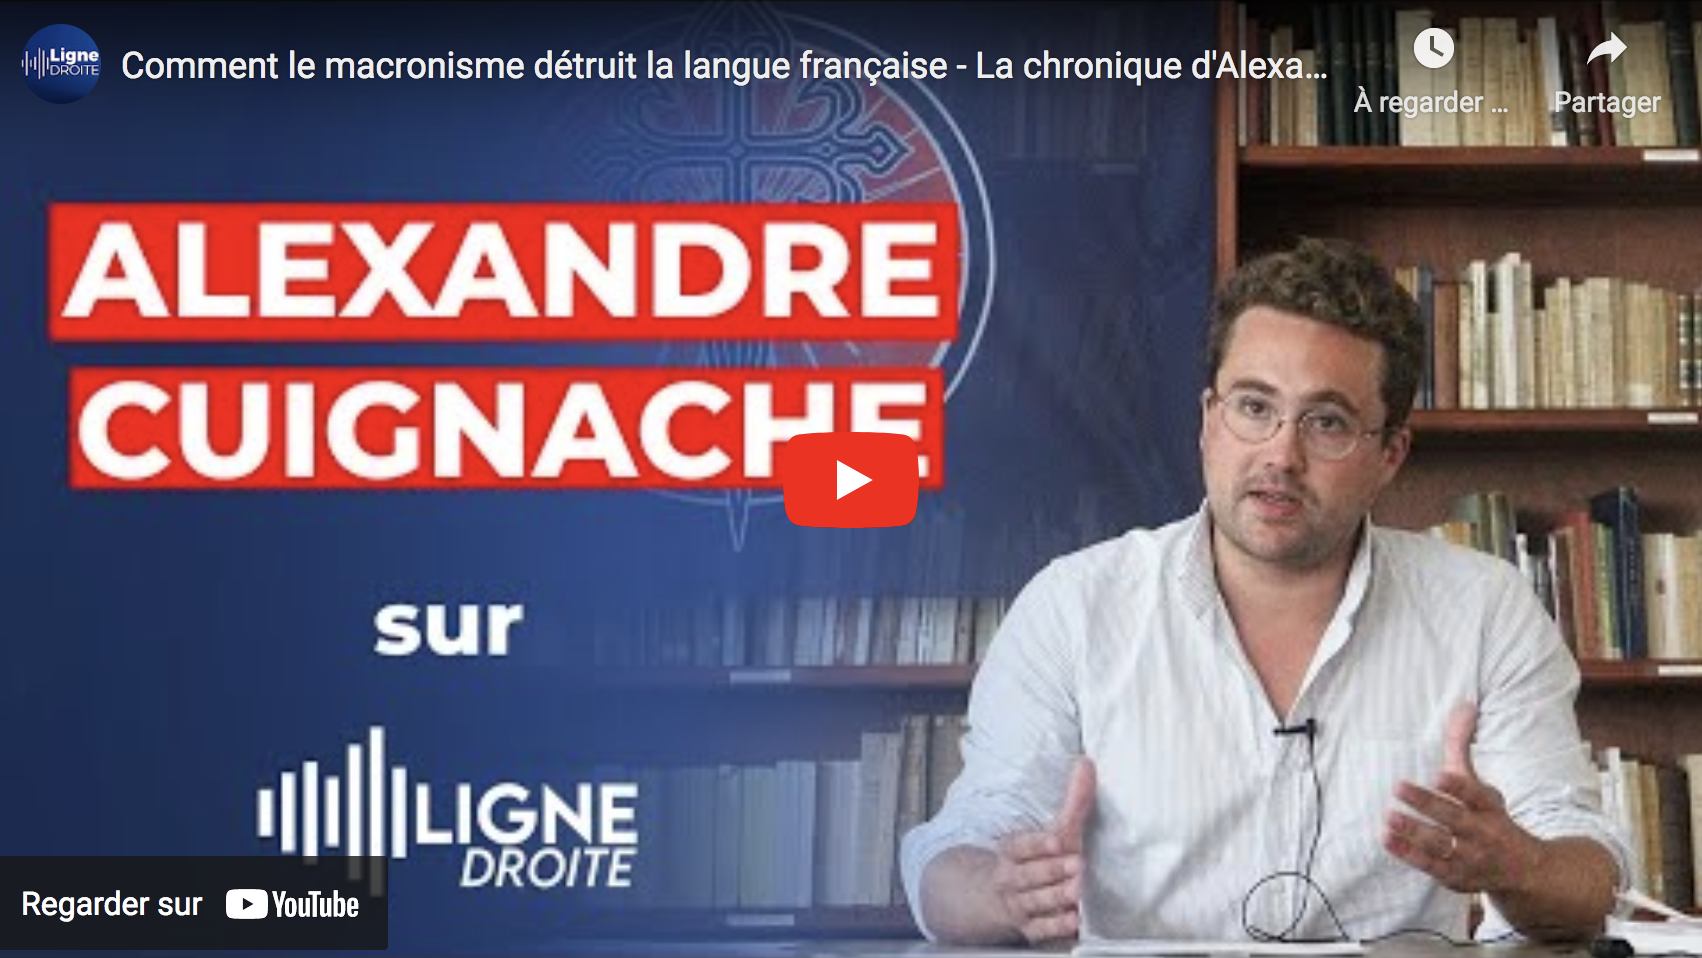 Comment le macronisme détruit la langue française (Alexandre Cuignache)